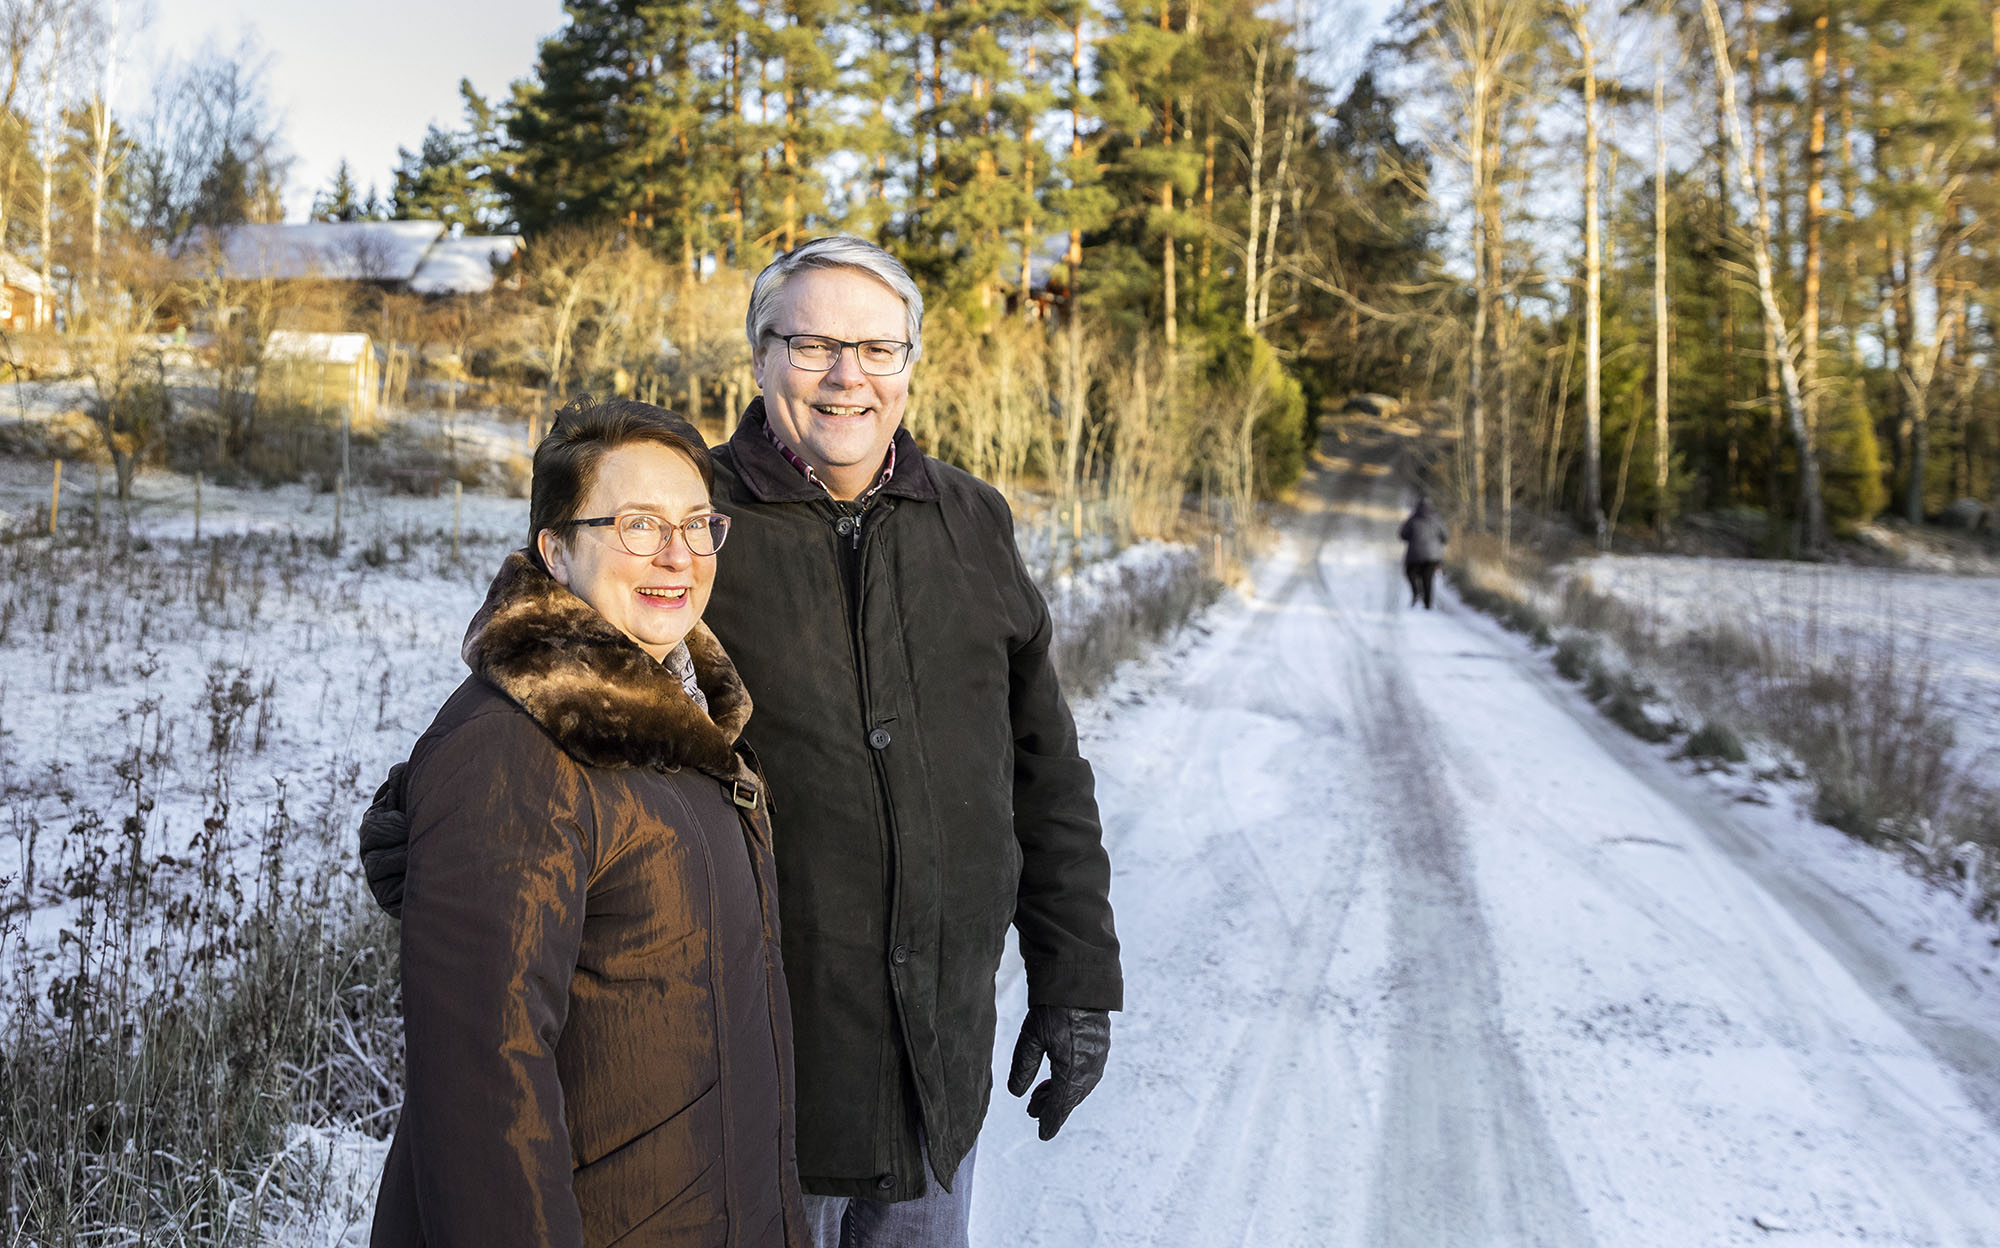 Mies ja nainen seisoo metsätien varressa. Maassa on vähän lunta. Taustalla näkyy taloja, metsikköä ja tietä pitkin kävelevä ihminen.